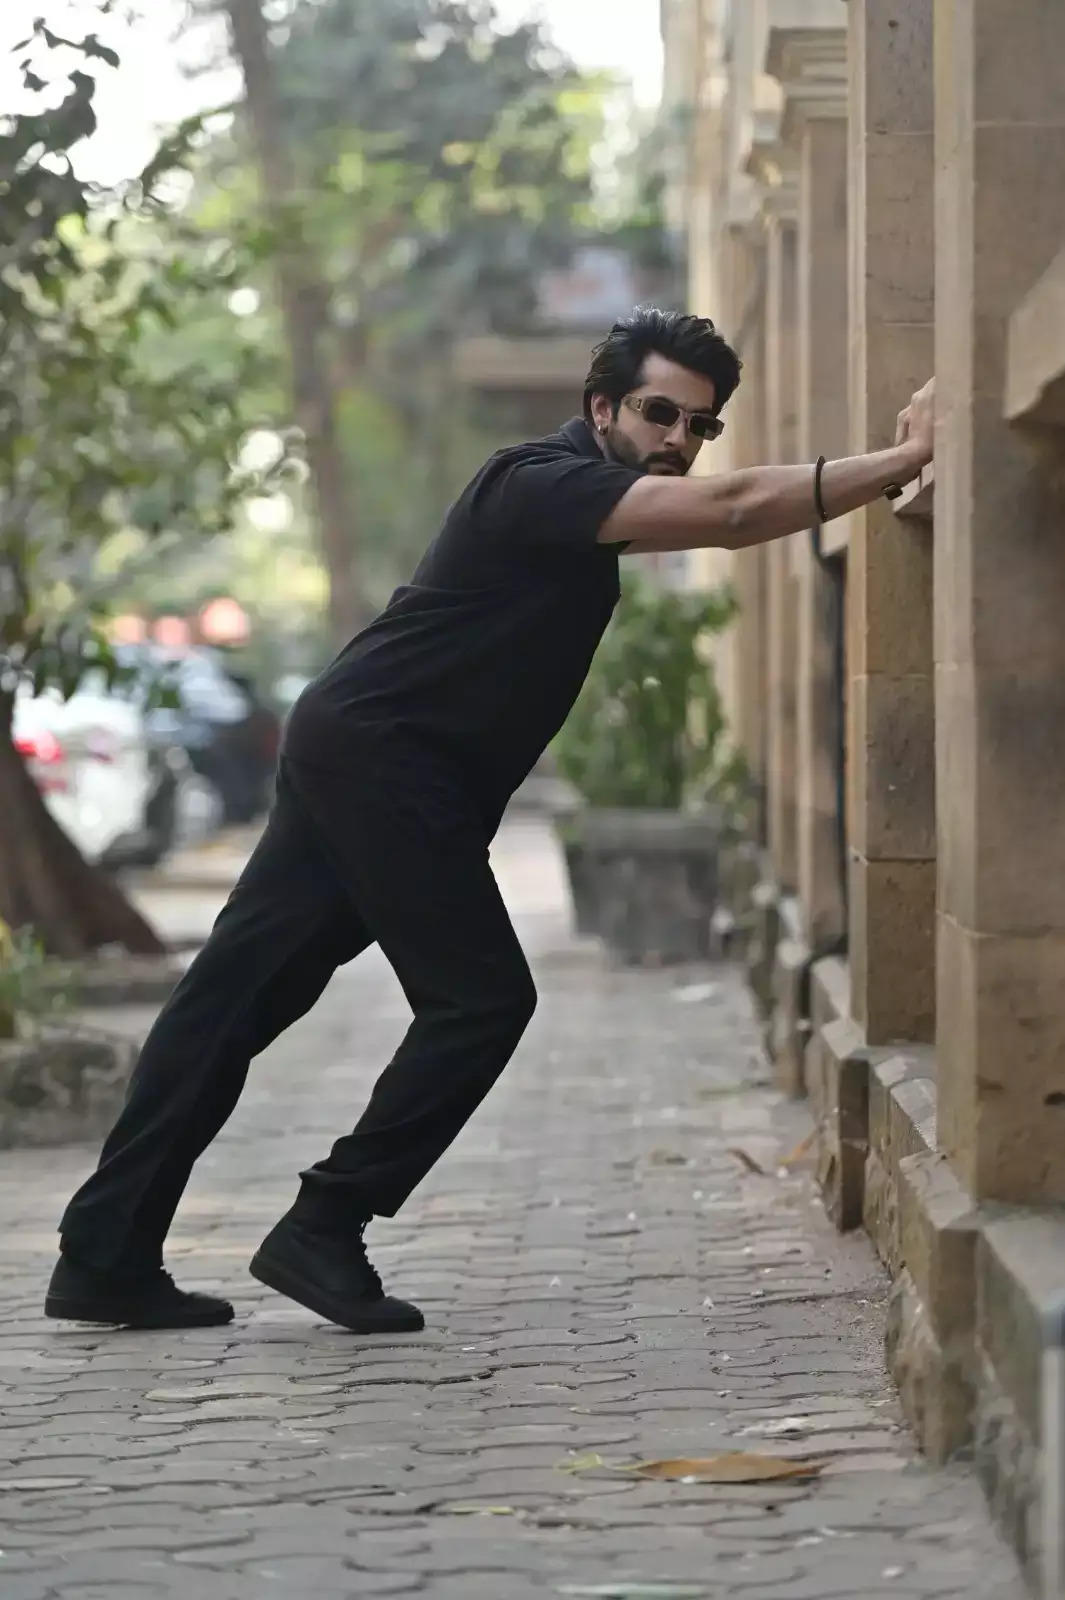 बॉलीवुड अभिनेता गौरव सरीन आगामी फिल्म 'दशमी' में नजर आएंगे!